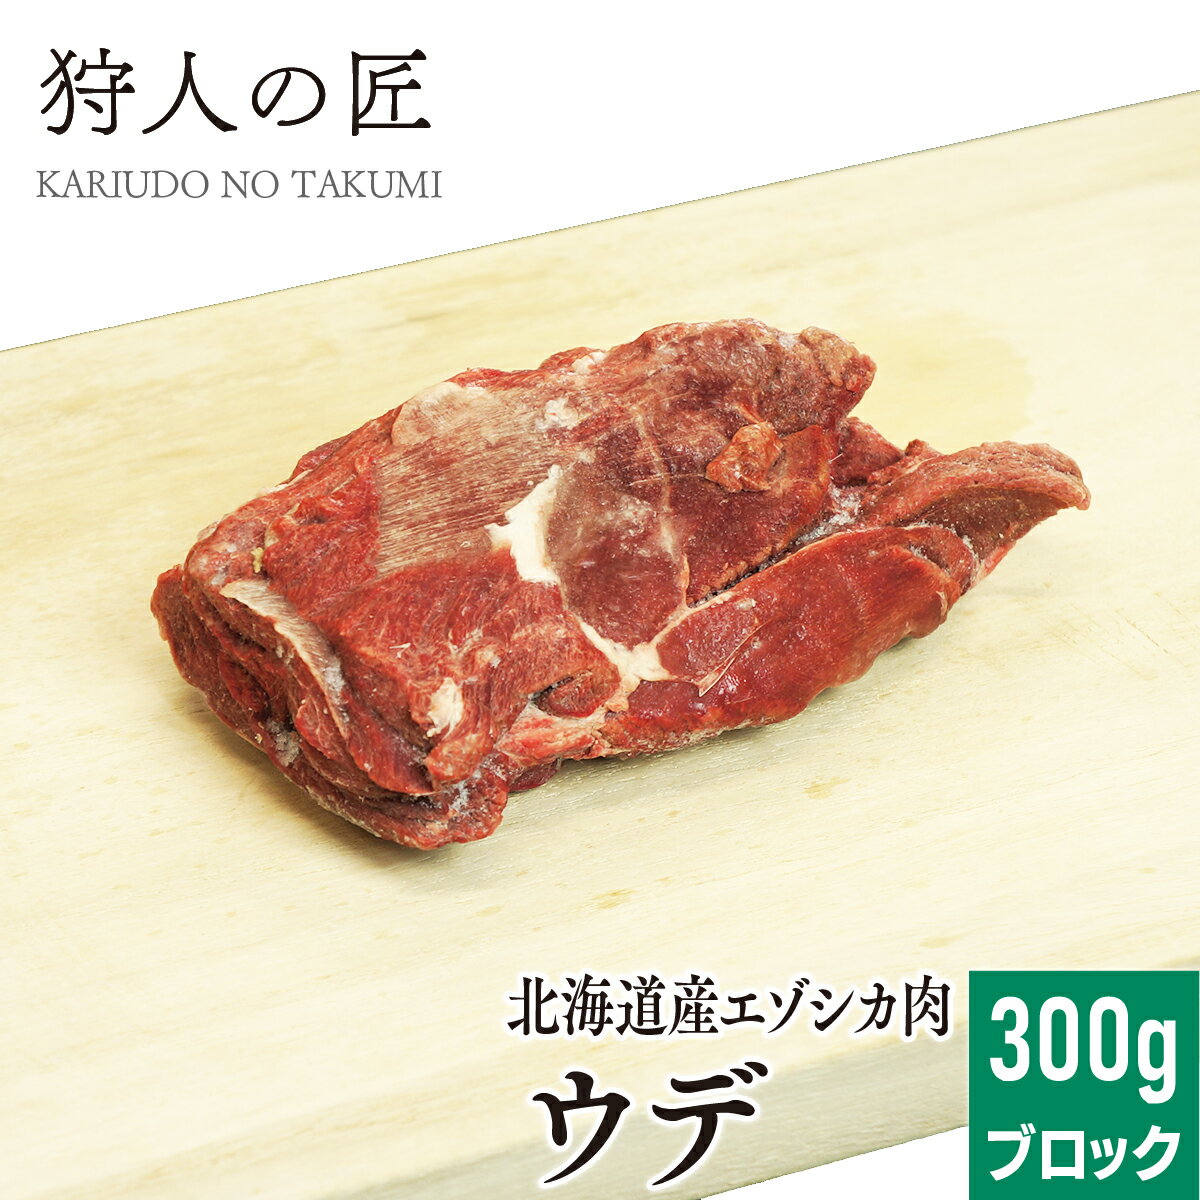 【北海道稚内産】エゾ鹿肉 ウデ肉 300g (ブロック)【無添加】【エゾシカ肉/蝦夷鹿肉/えぞしか肉/ジビエ】